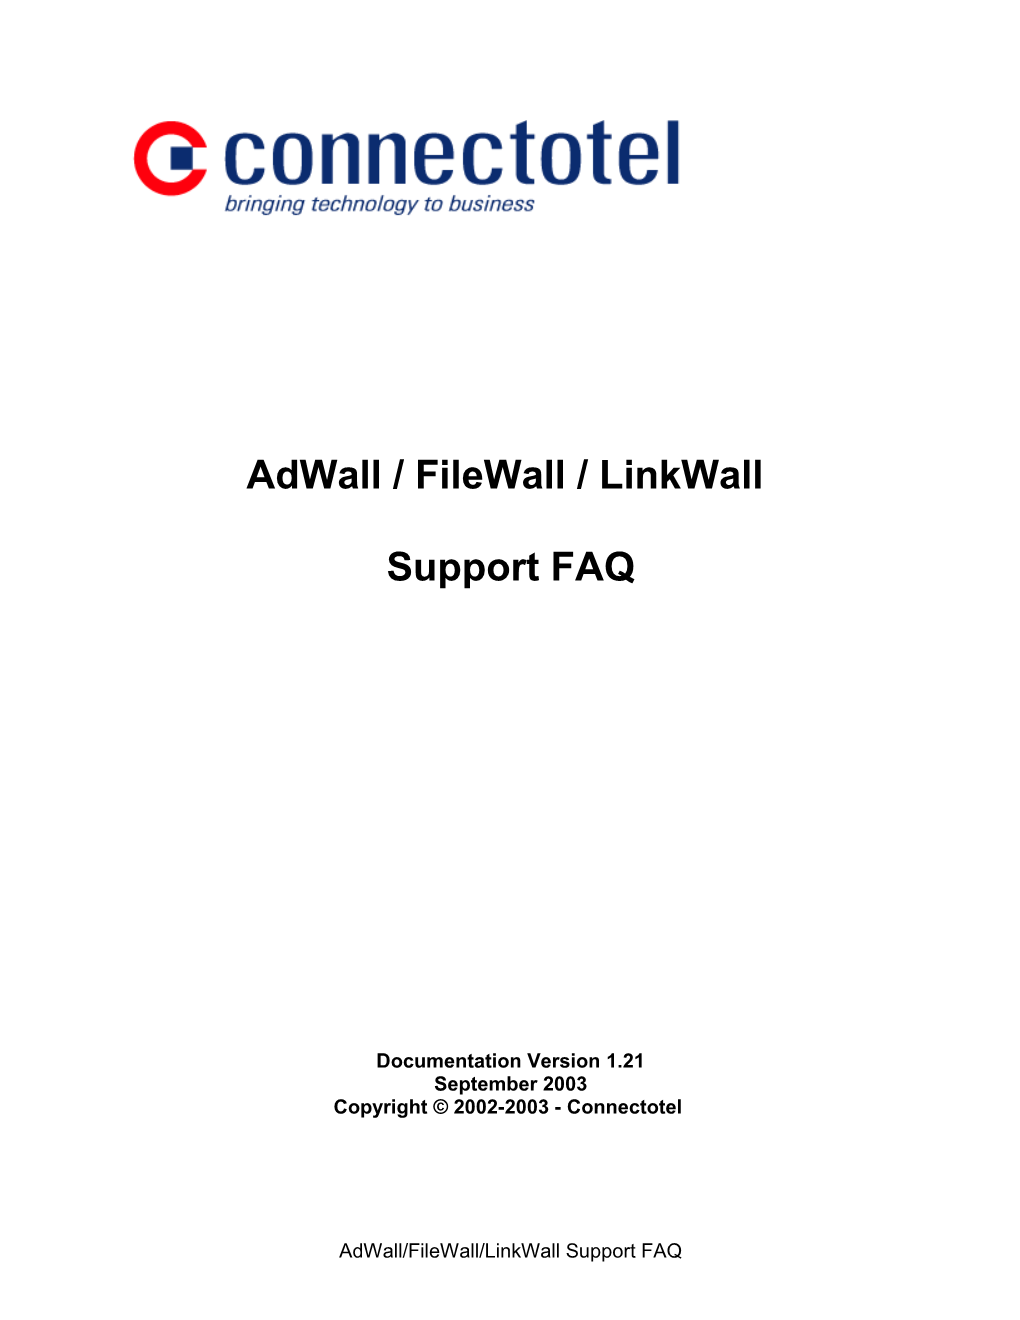 Adwall/Filewall/Linkwall Support FAQ